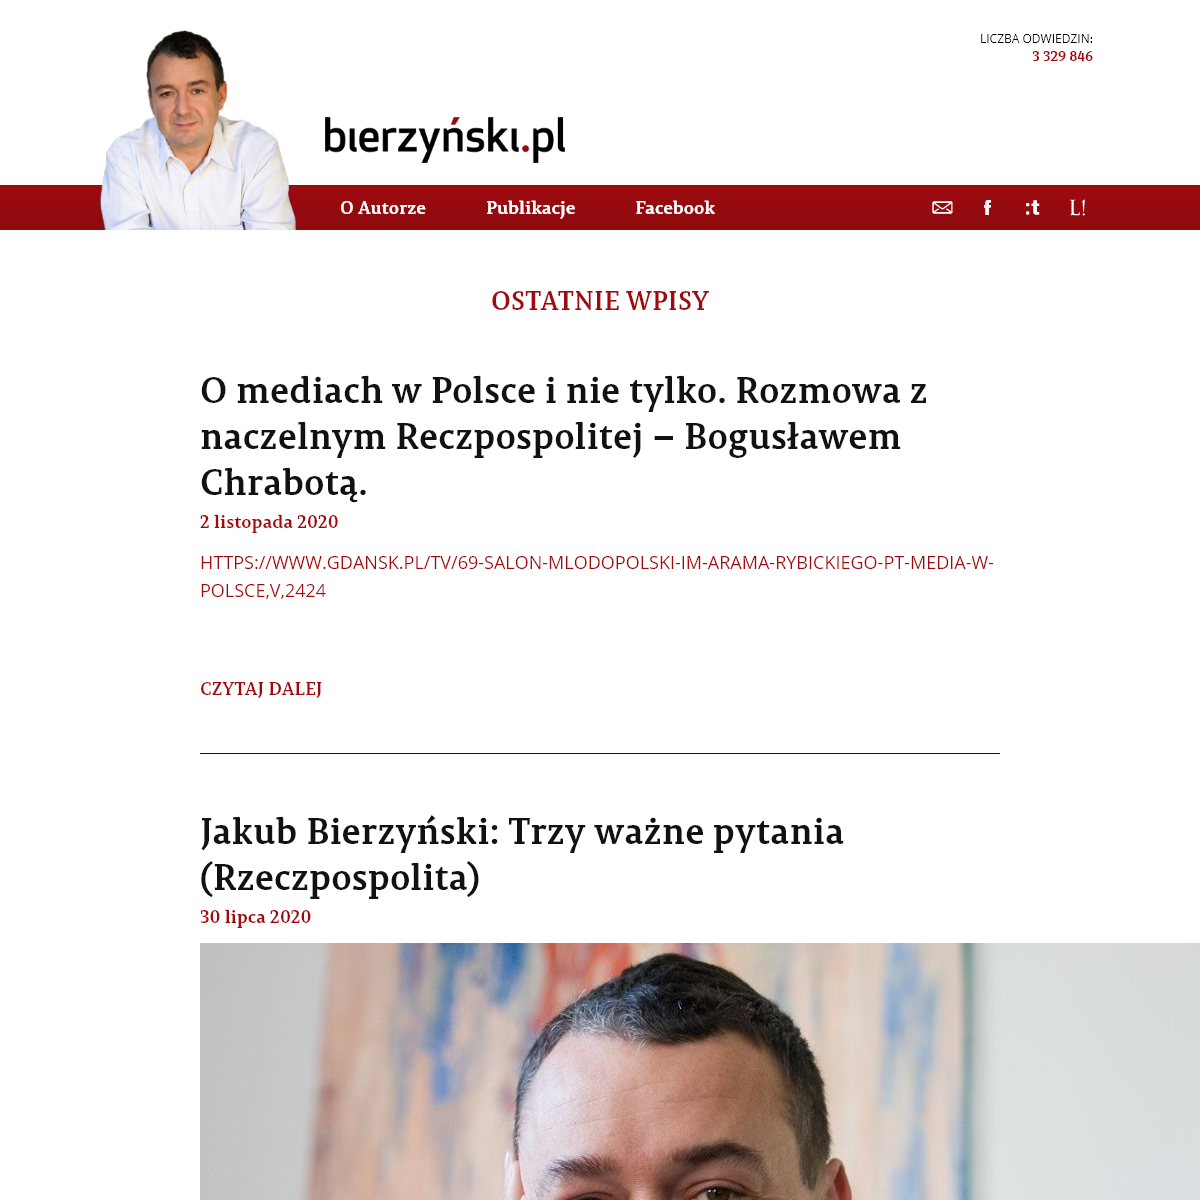 A complete backup of bierzynski.pl